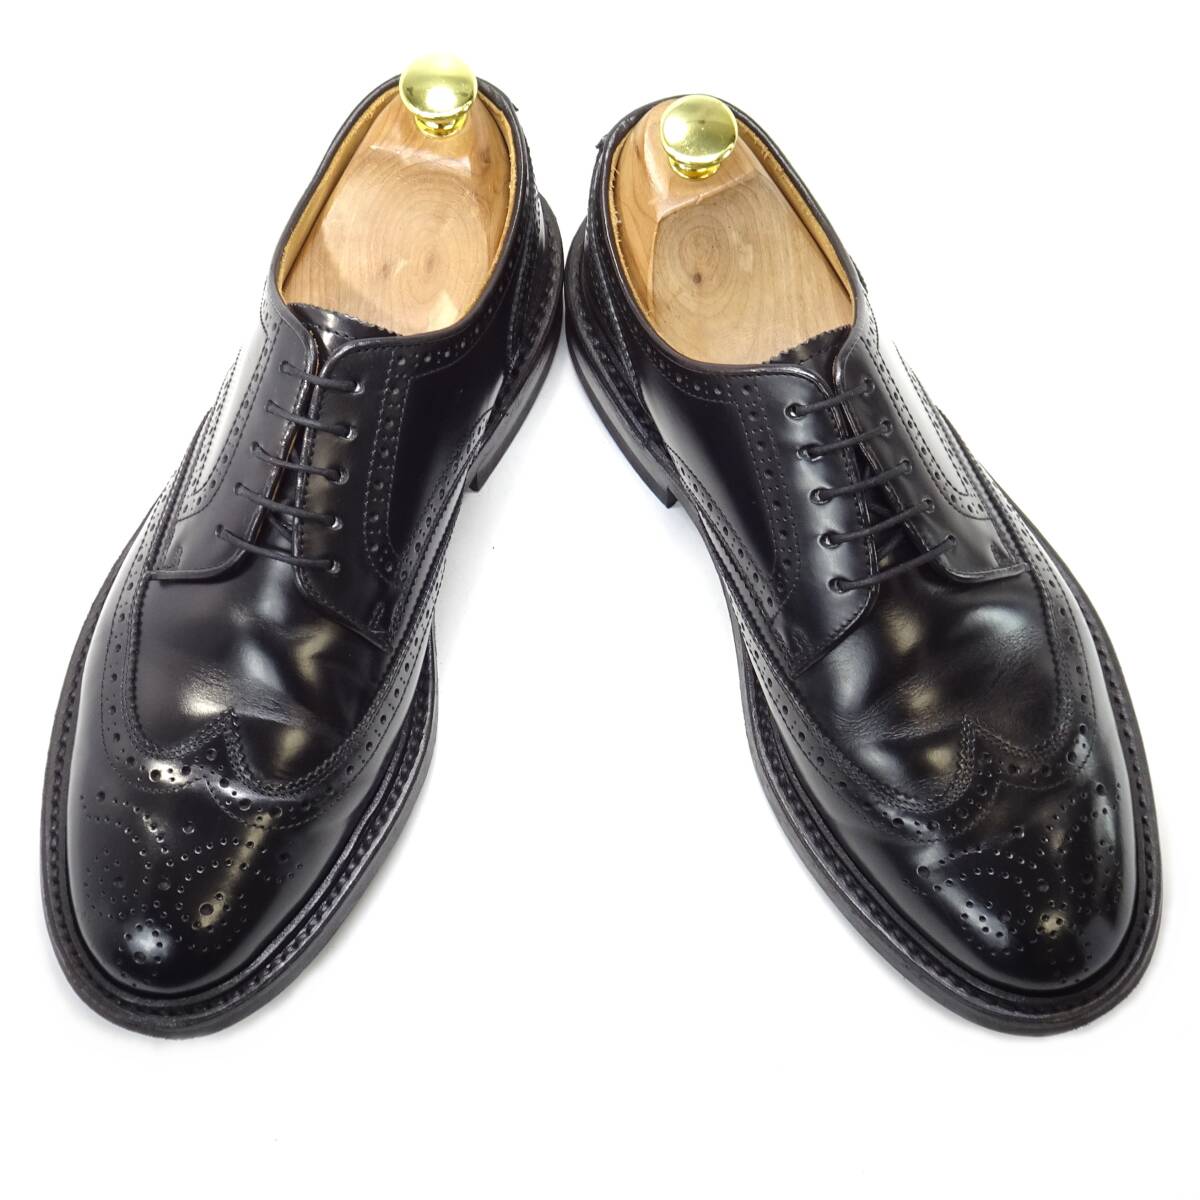 即決 REGAL Worth collection 25.0cm ウイングチップ リーガル メンズ 黒 ブラック BLK 本革 ビジネス 本皮 レースアップ 革靴 紳士靴 通勤